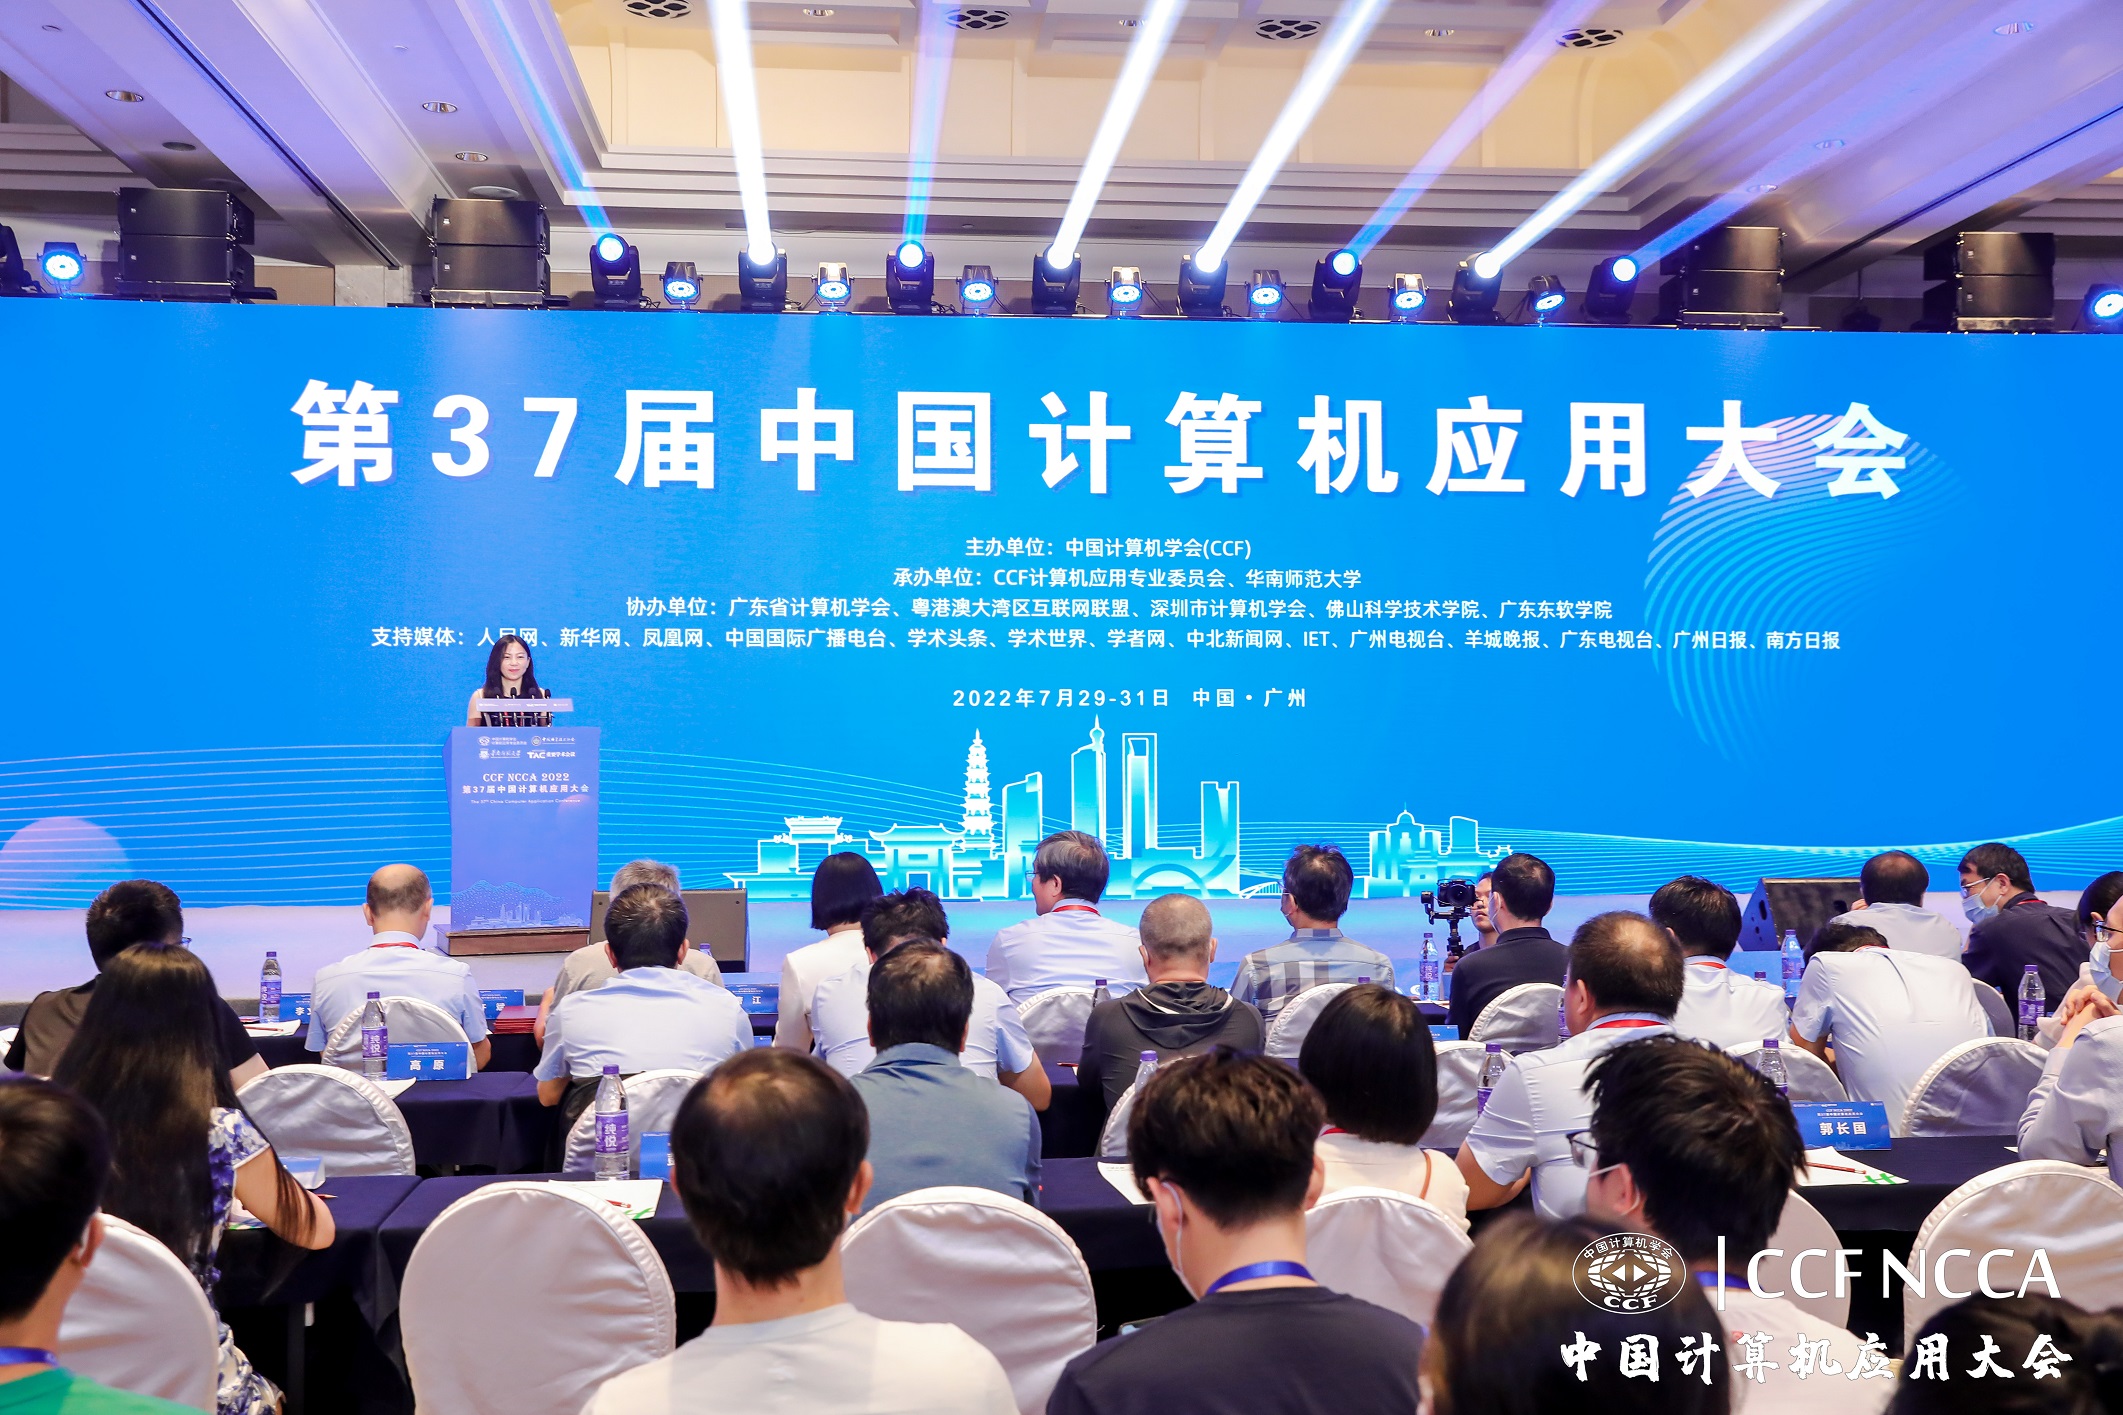 1、我校承办的第37届中国计算机应用大会在广州市花都区隆重举行001.jpg